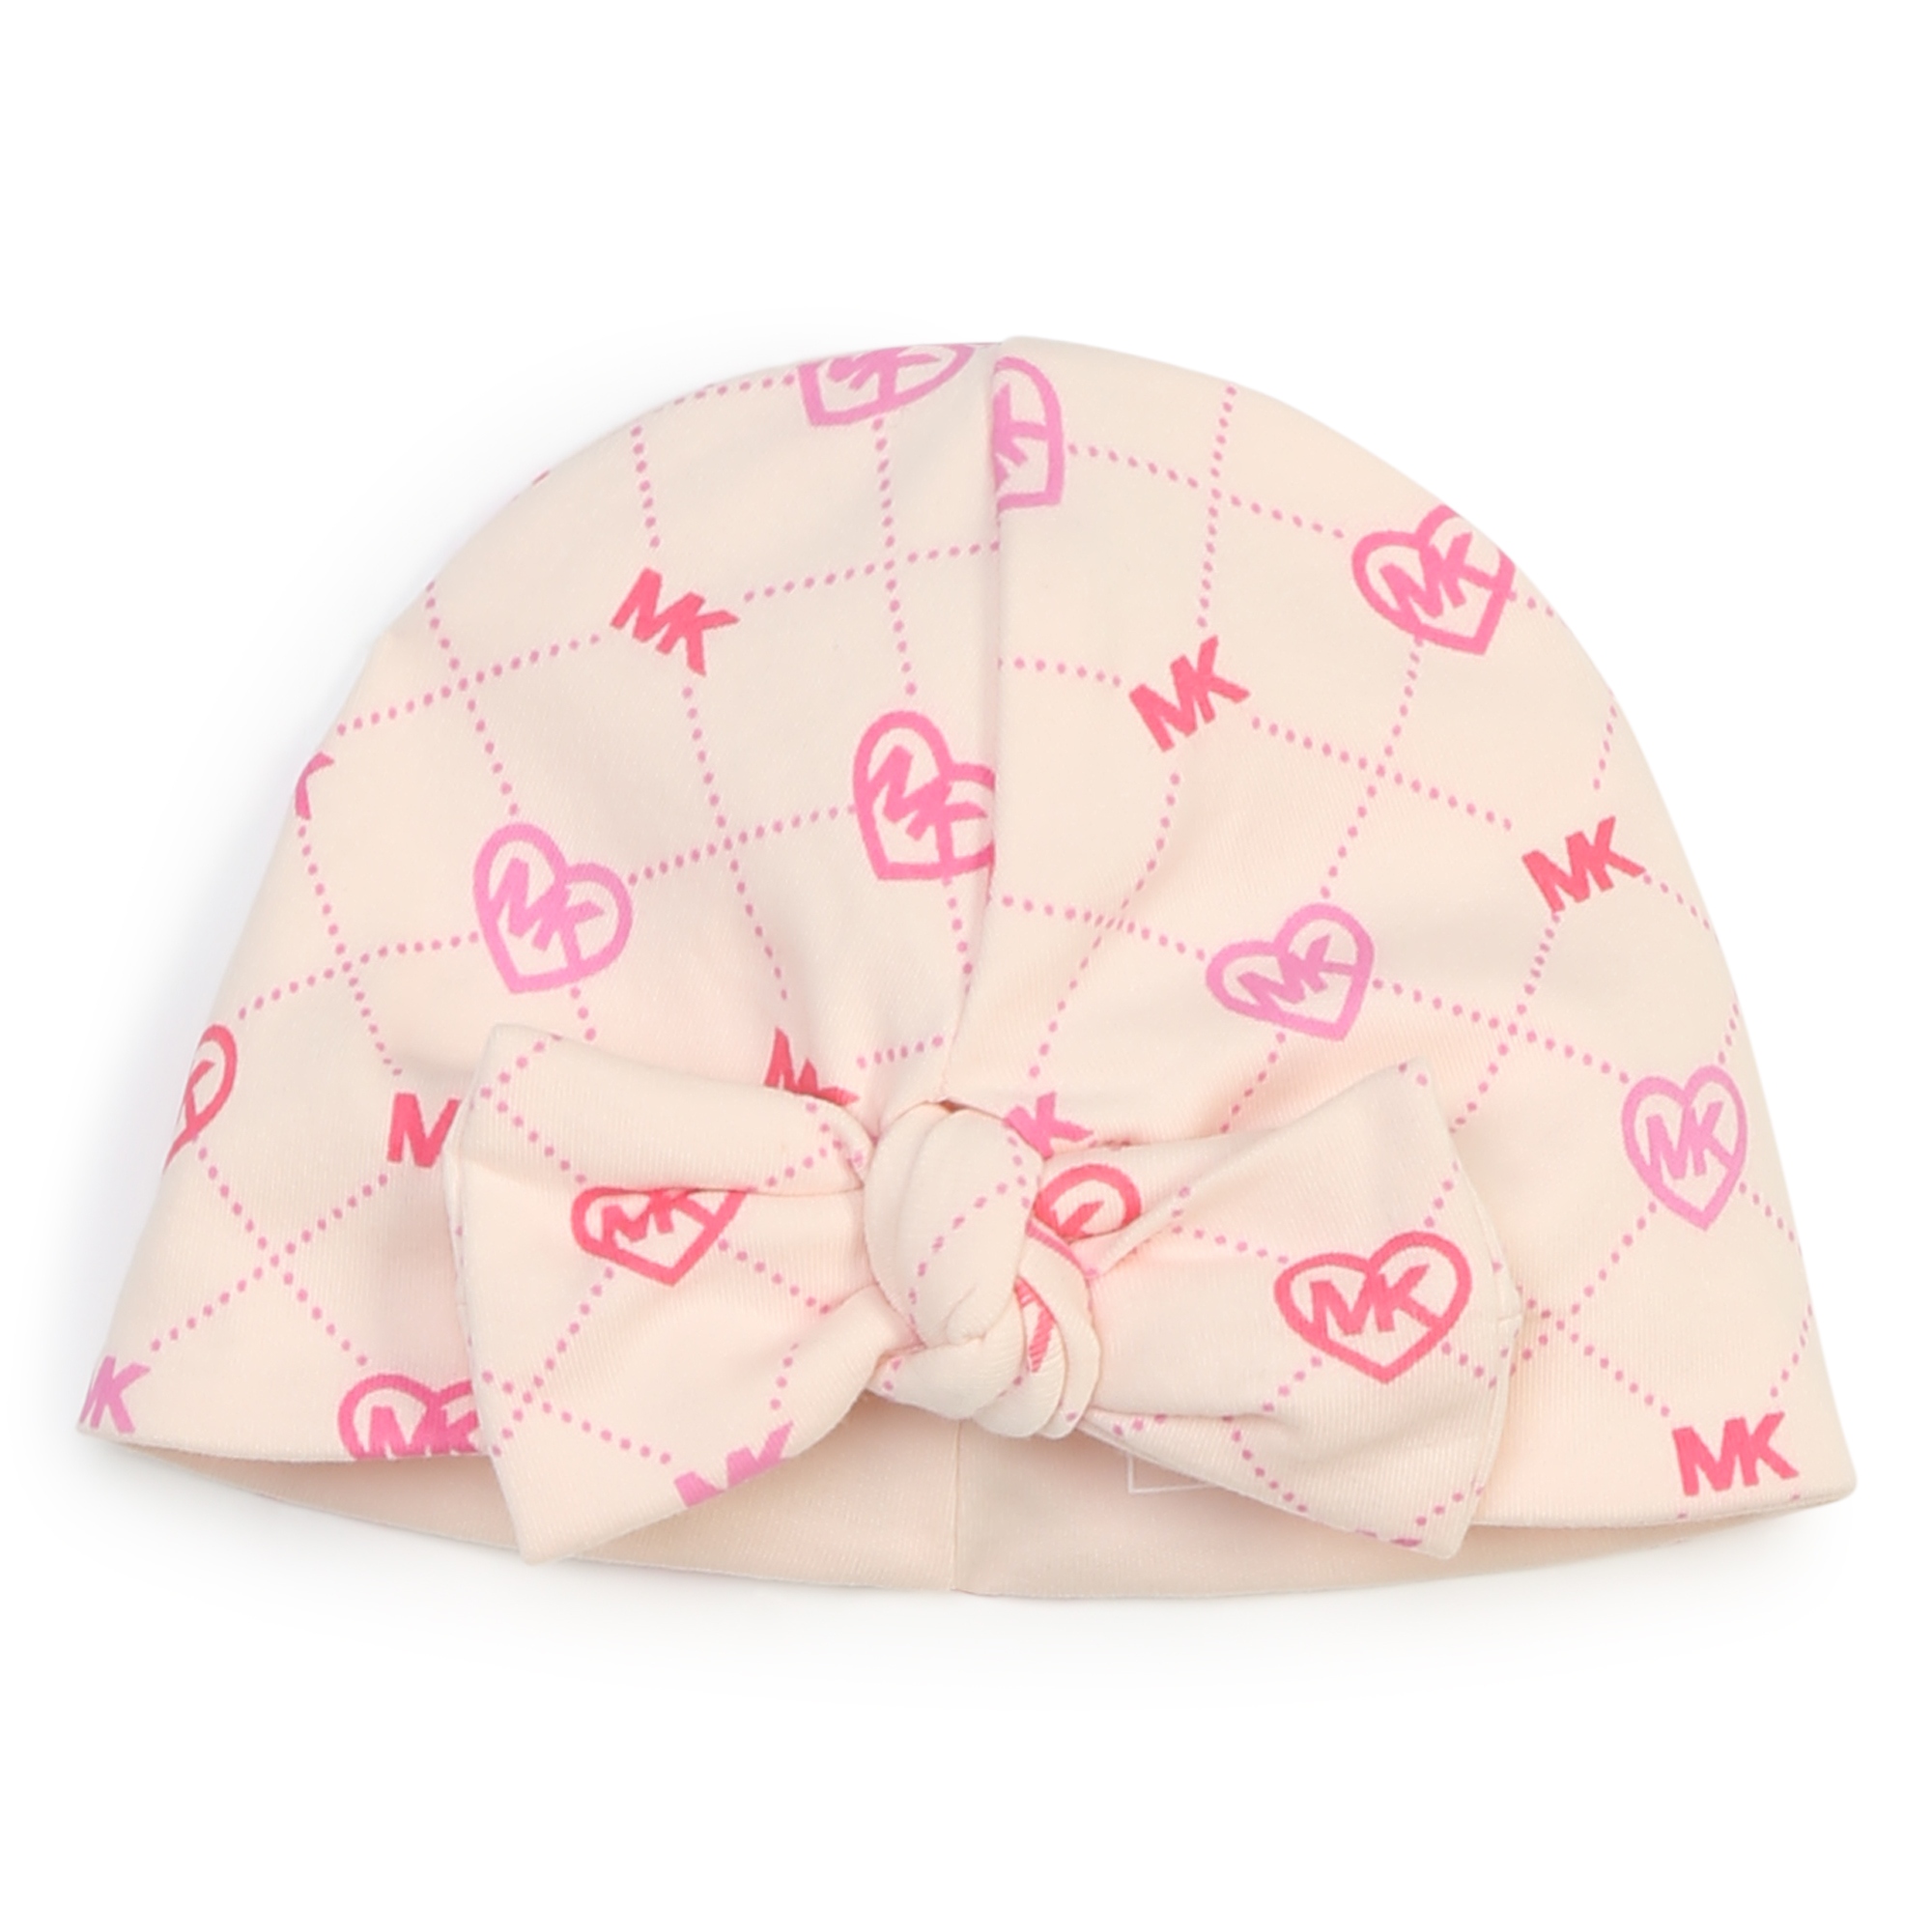 Pyjama, hat and comforter set MICHAEL KORS for GIRL